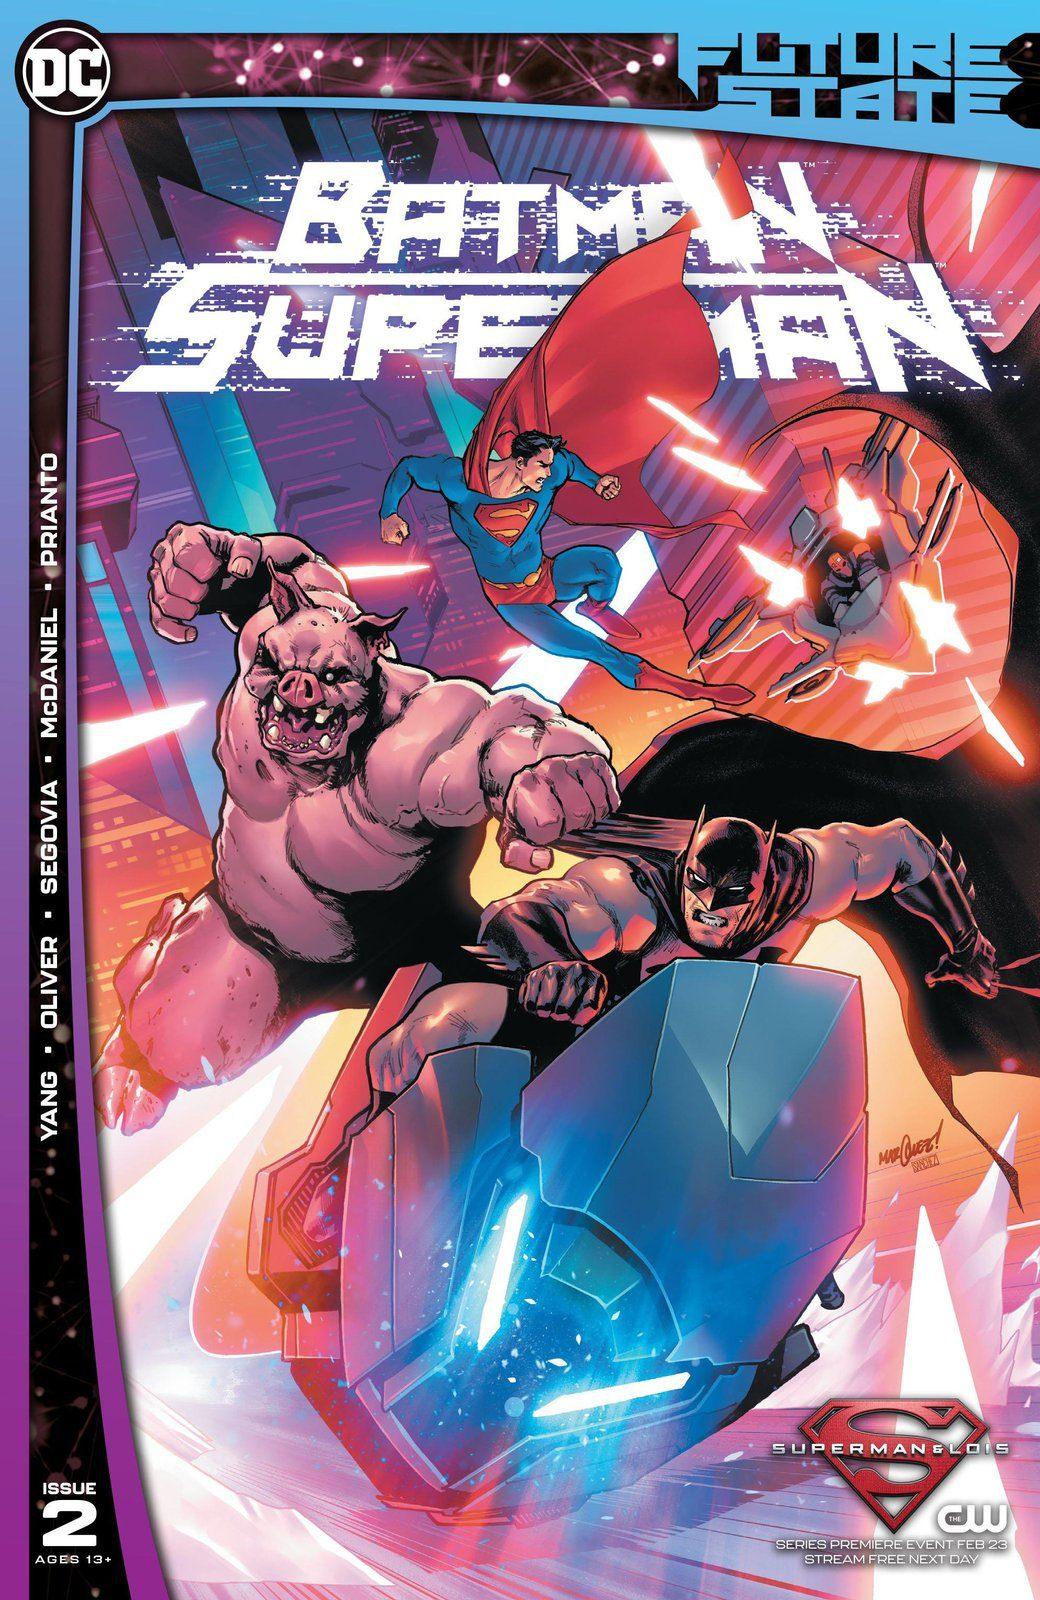 FUTURE STATE BATMAN SUPERMAN #2 (OF 2) CVR A DAVID MARQUEZ (SHIPS 02-23-21) - PCKComics.com